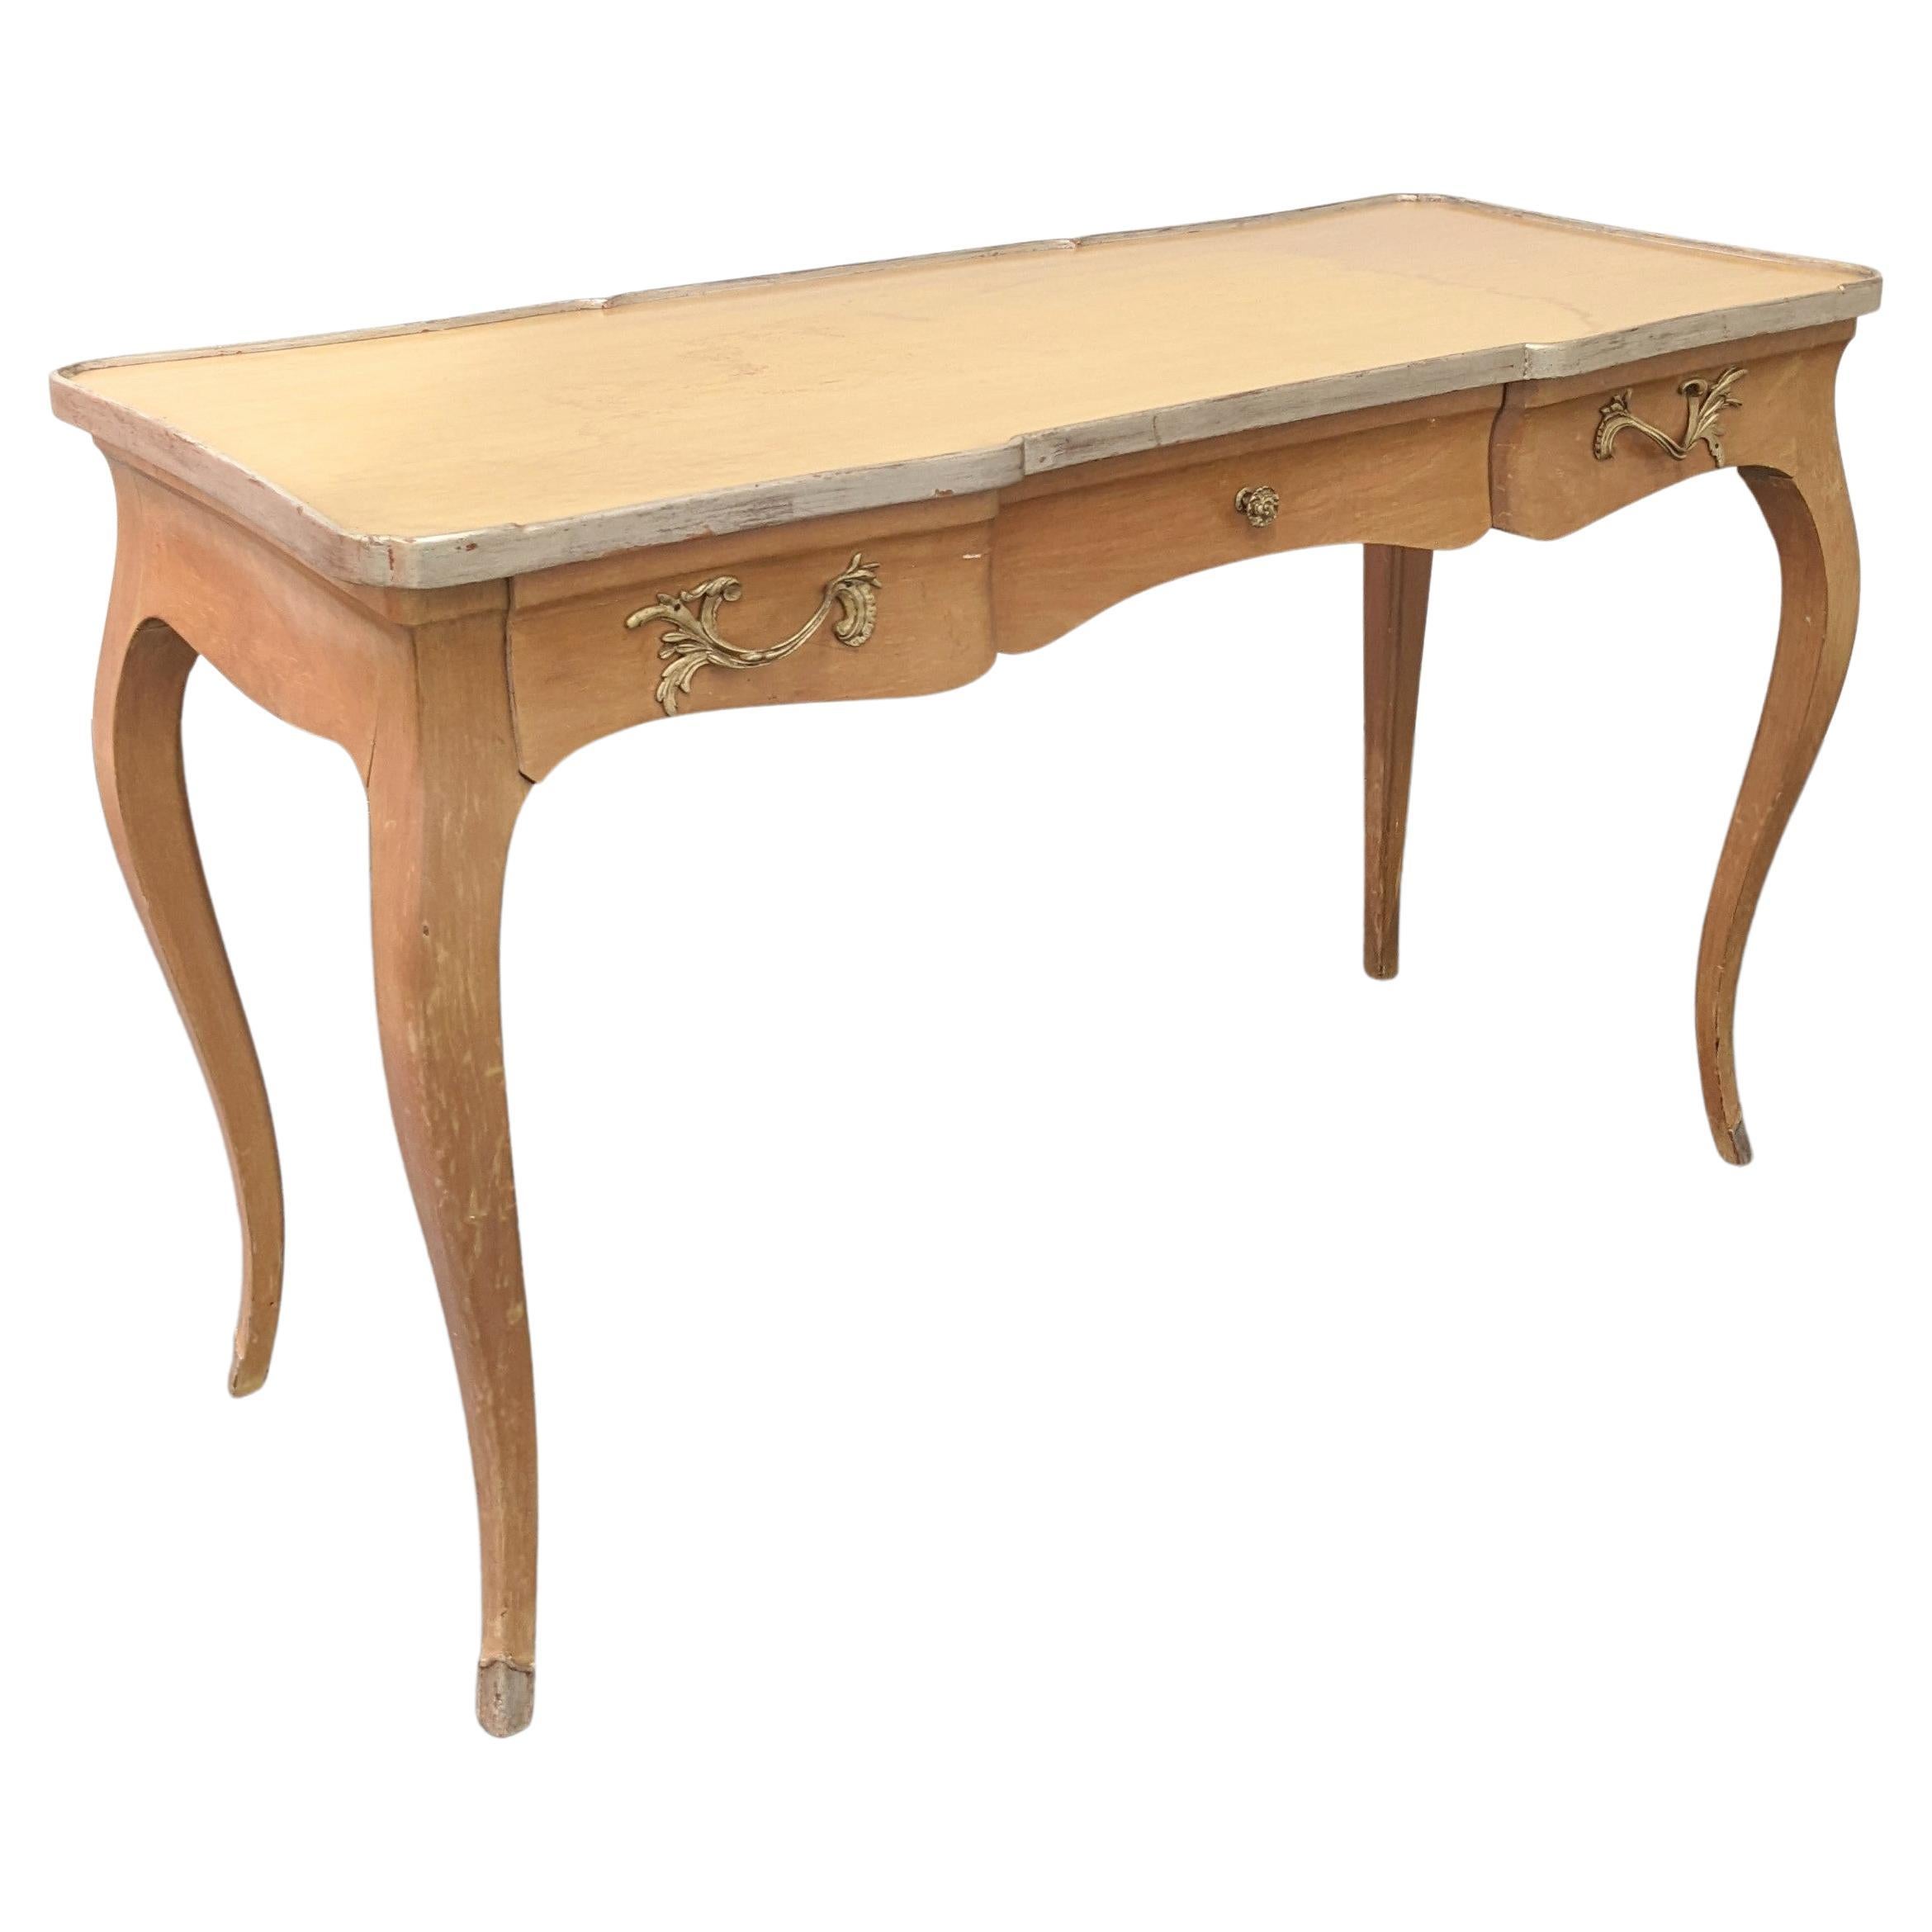 Elégant bureau de style français aux lignes Louis XV en bois blond avec bord de table et pieds peints à la feuille d'argent. 3 tiroirs. Le plateau en verre est inclus (sans image).
Mesures : 20